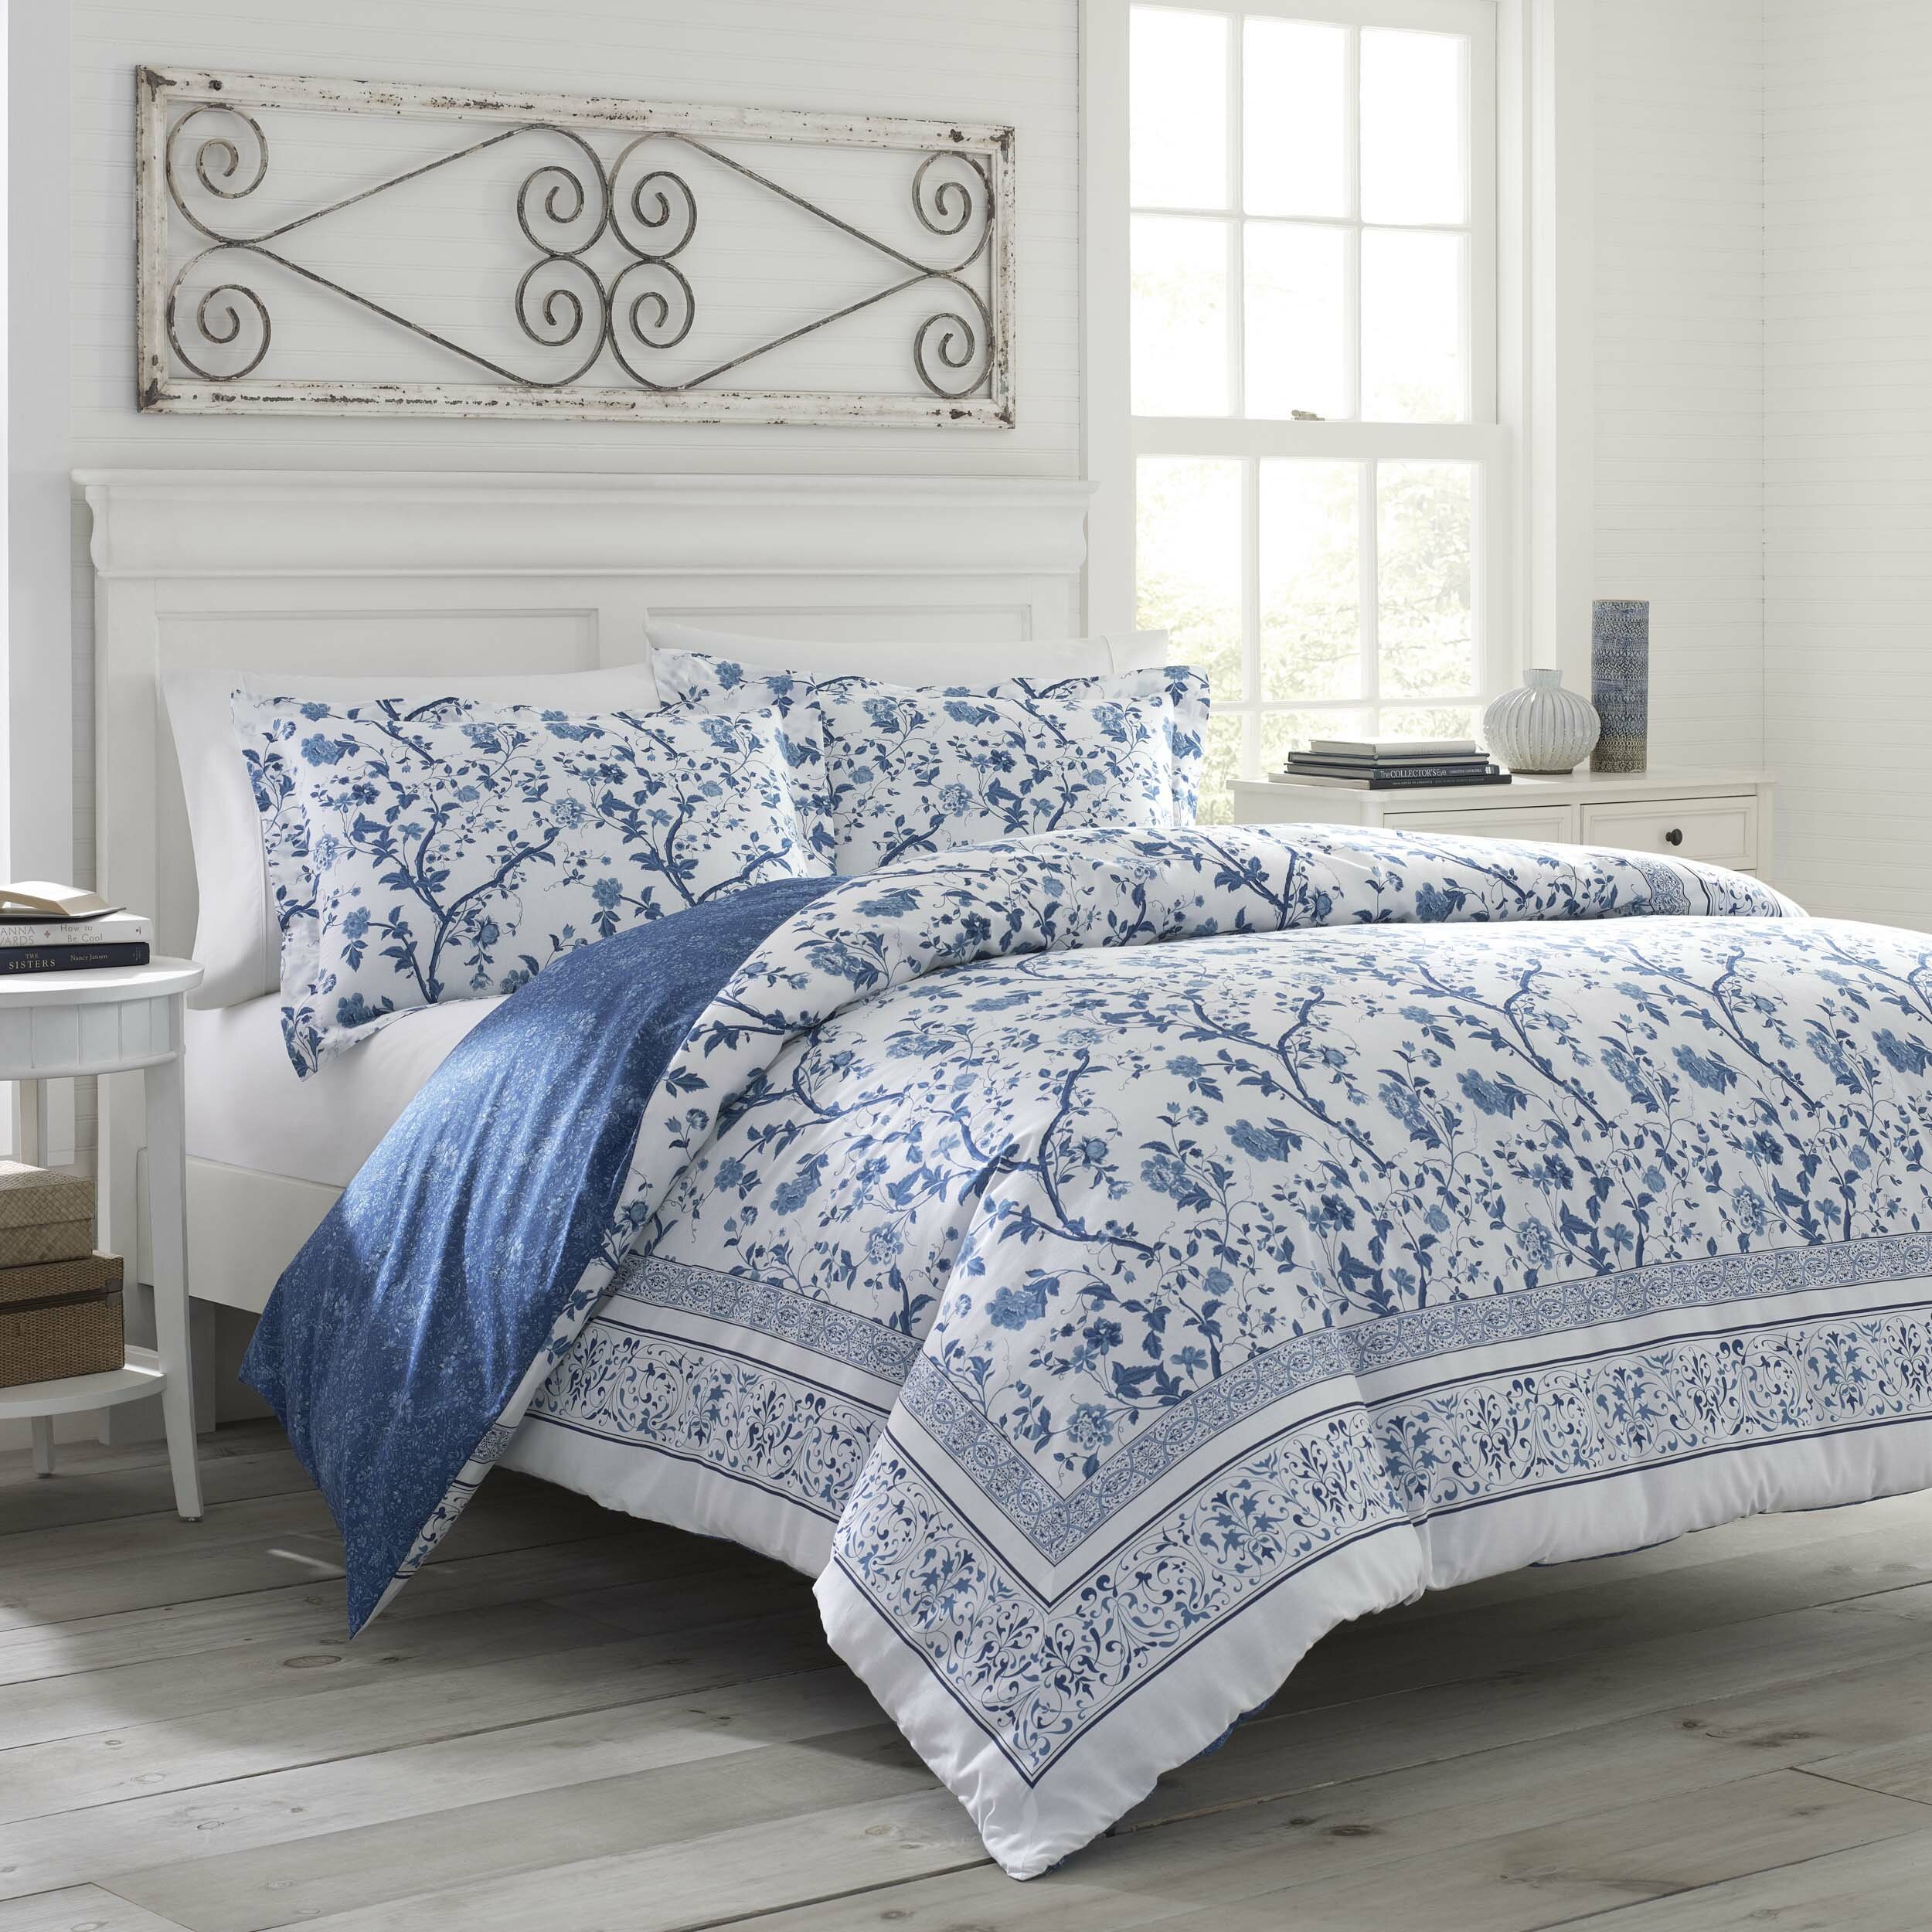 https://assets.wfcdn.com/im/96153365/compr-r85/9830/98300357/charlotte-bluewhite-floral-100-cotton-reversible-comforter-set.jpg